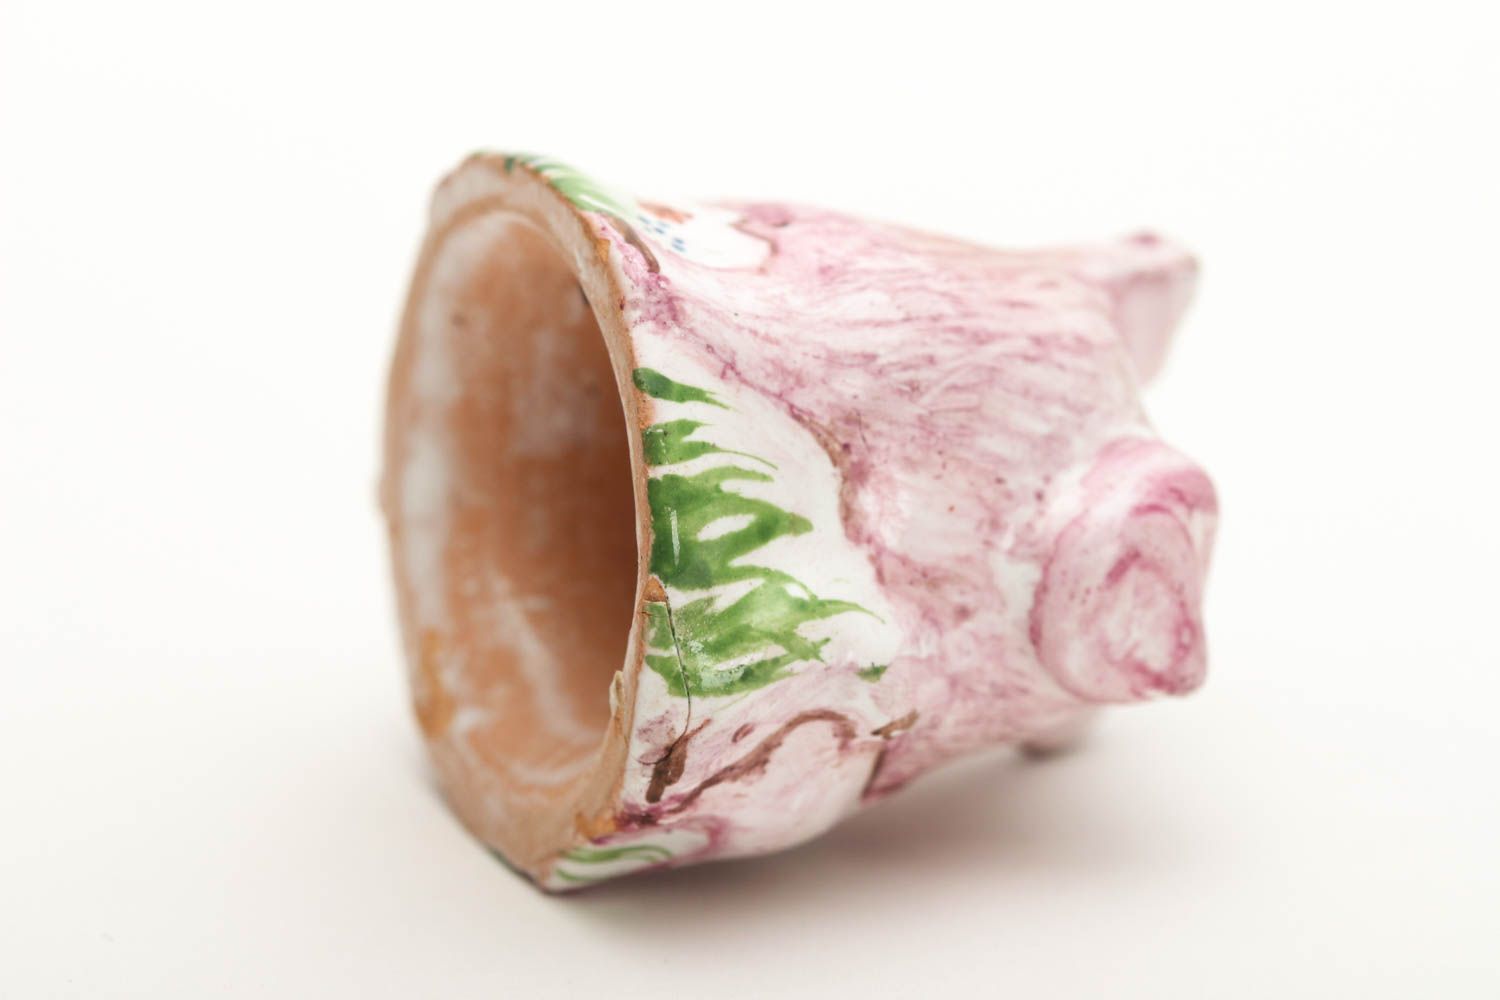 Handmade Deko Keramik Figur kleiner Fingerhut Nähen Zubehör Schwein hübsch foto 4